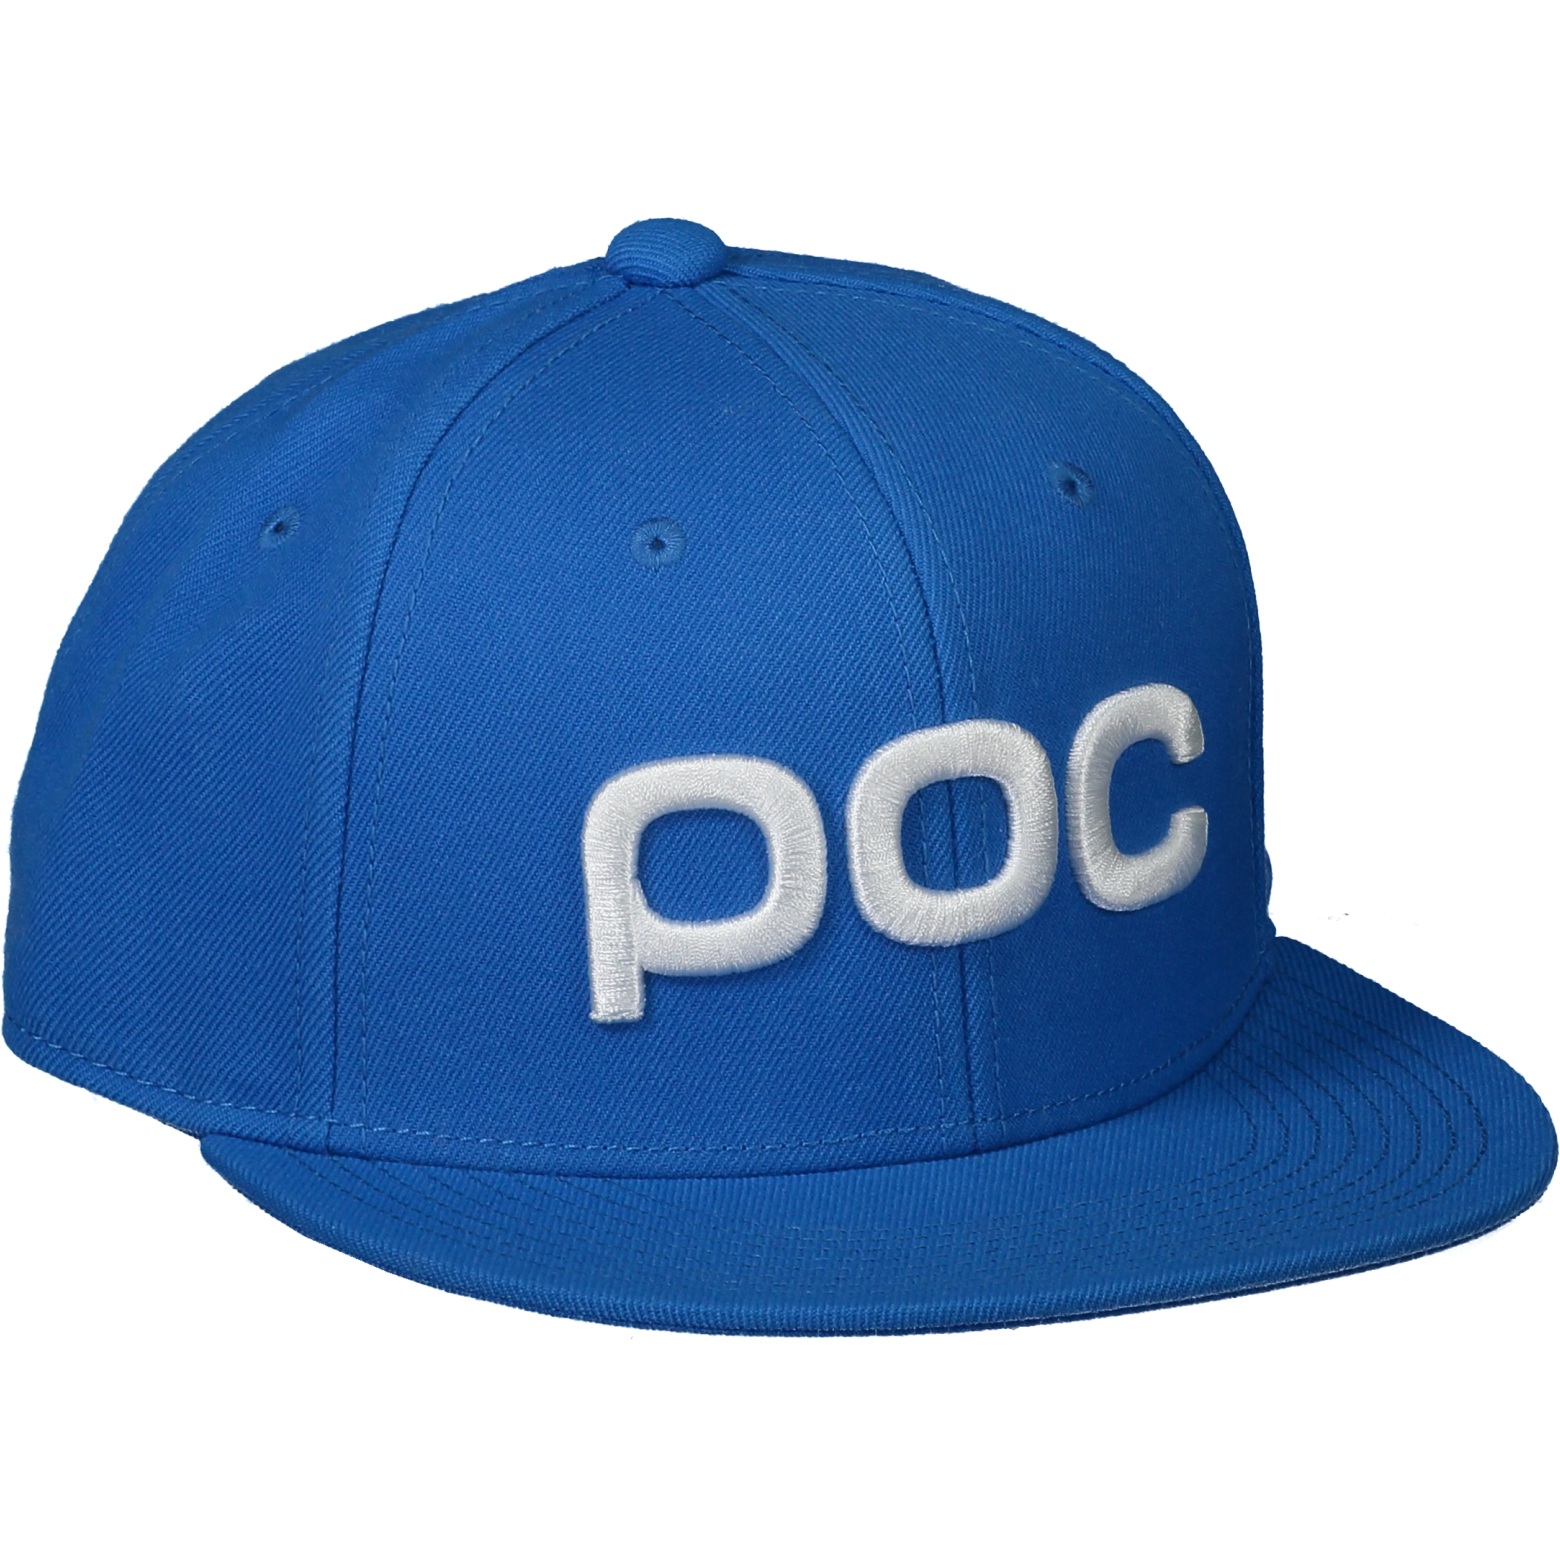 Produktbild von POC Corp Cap Jr - 1651 natrium blue